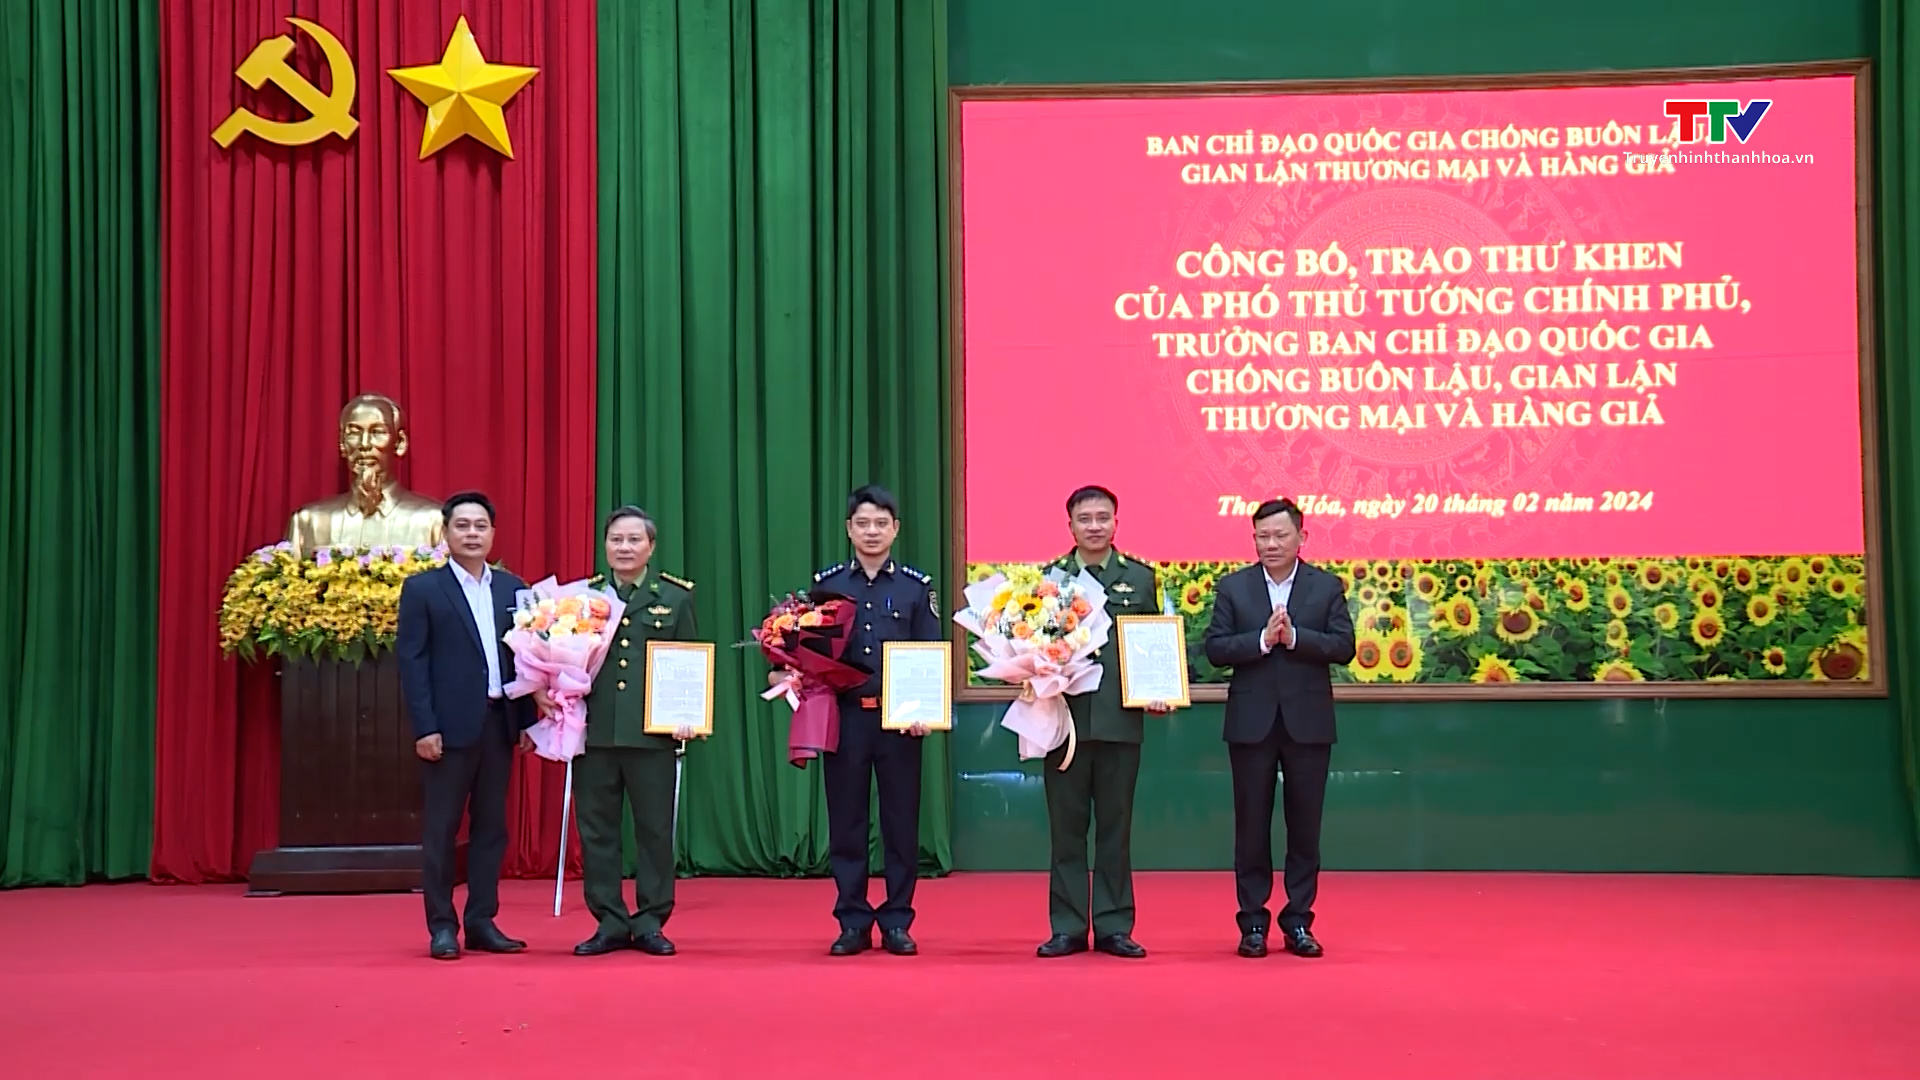 Công bố, trao thư khen của Phó Thủ tướng Chính phủ cho lực lượng thực hiện chuyên án TH823- Ảnh 1.